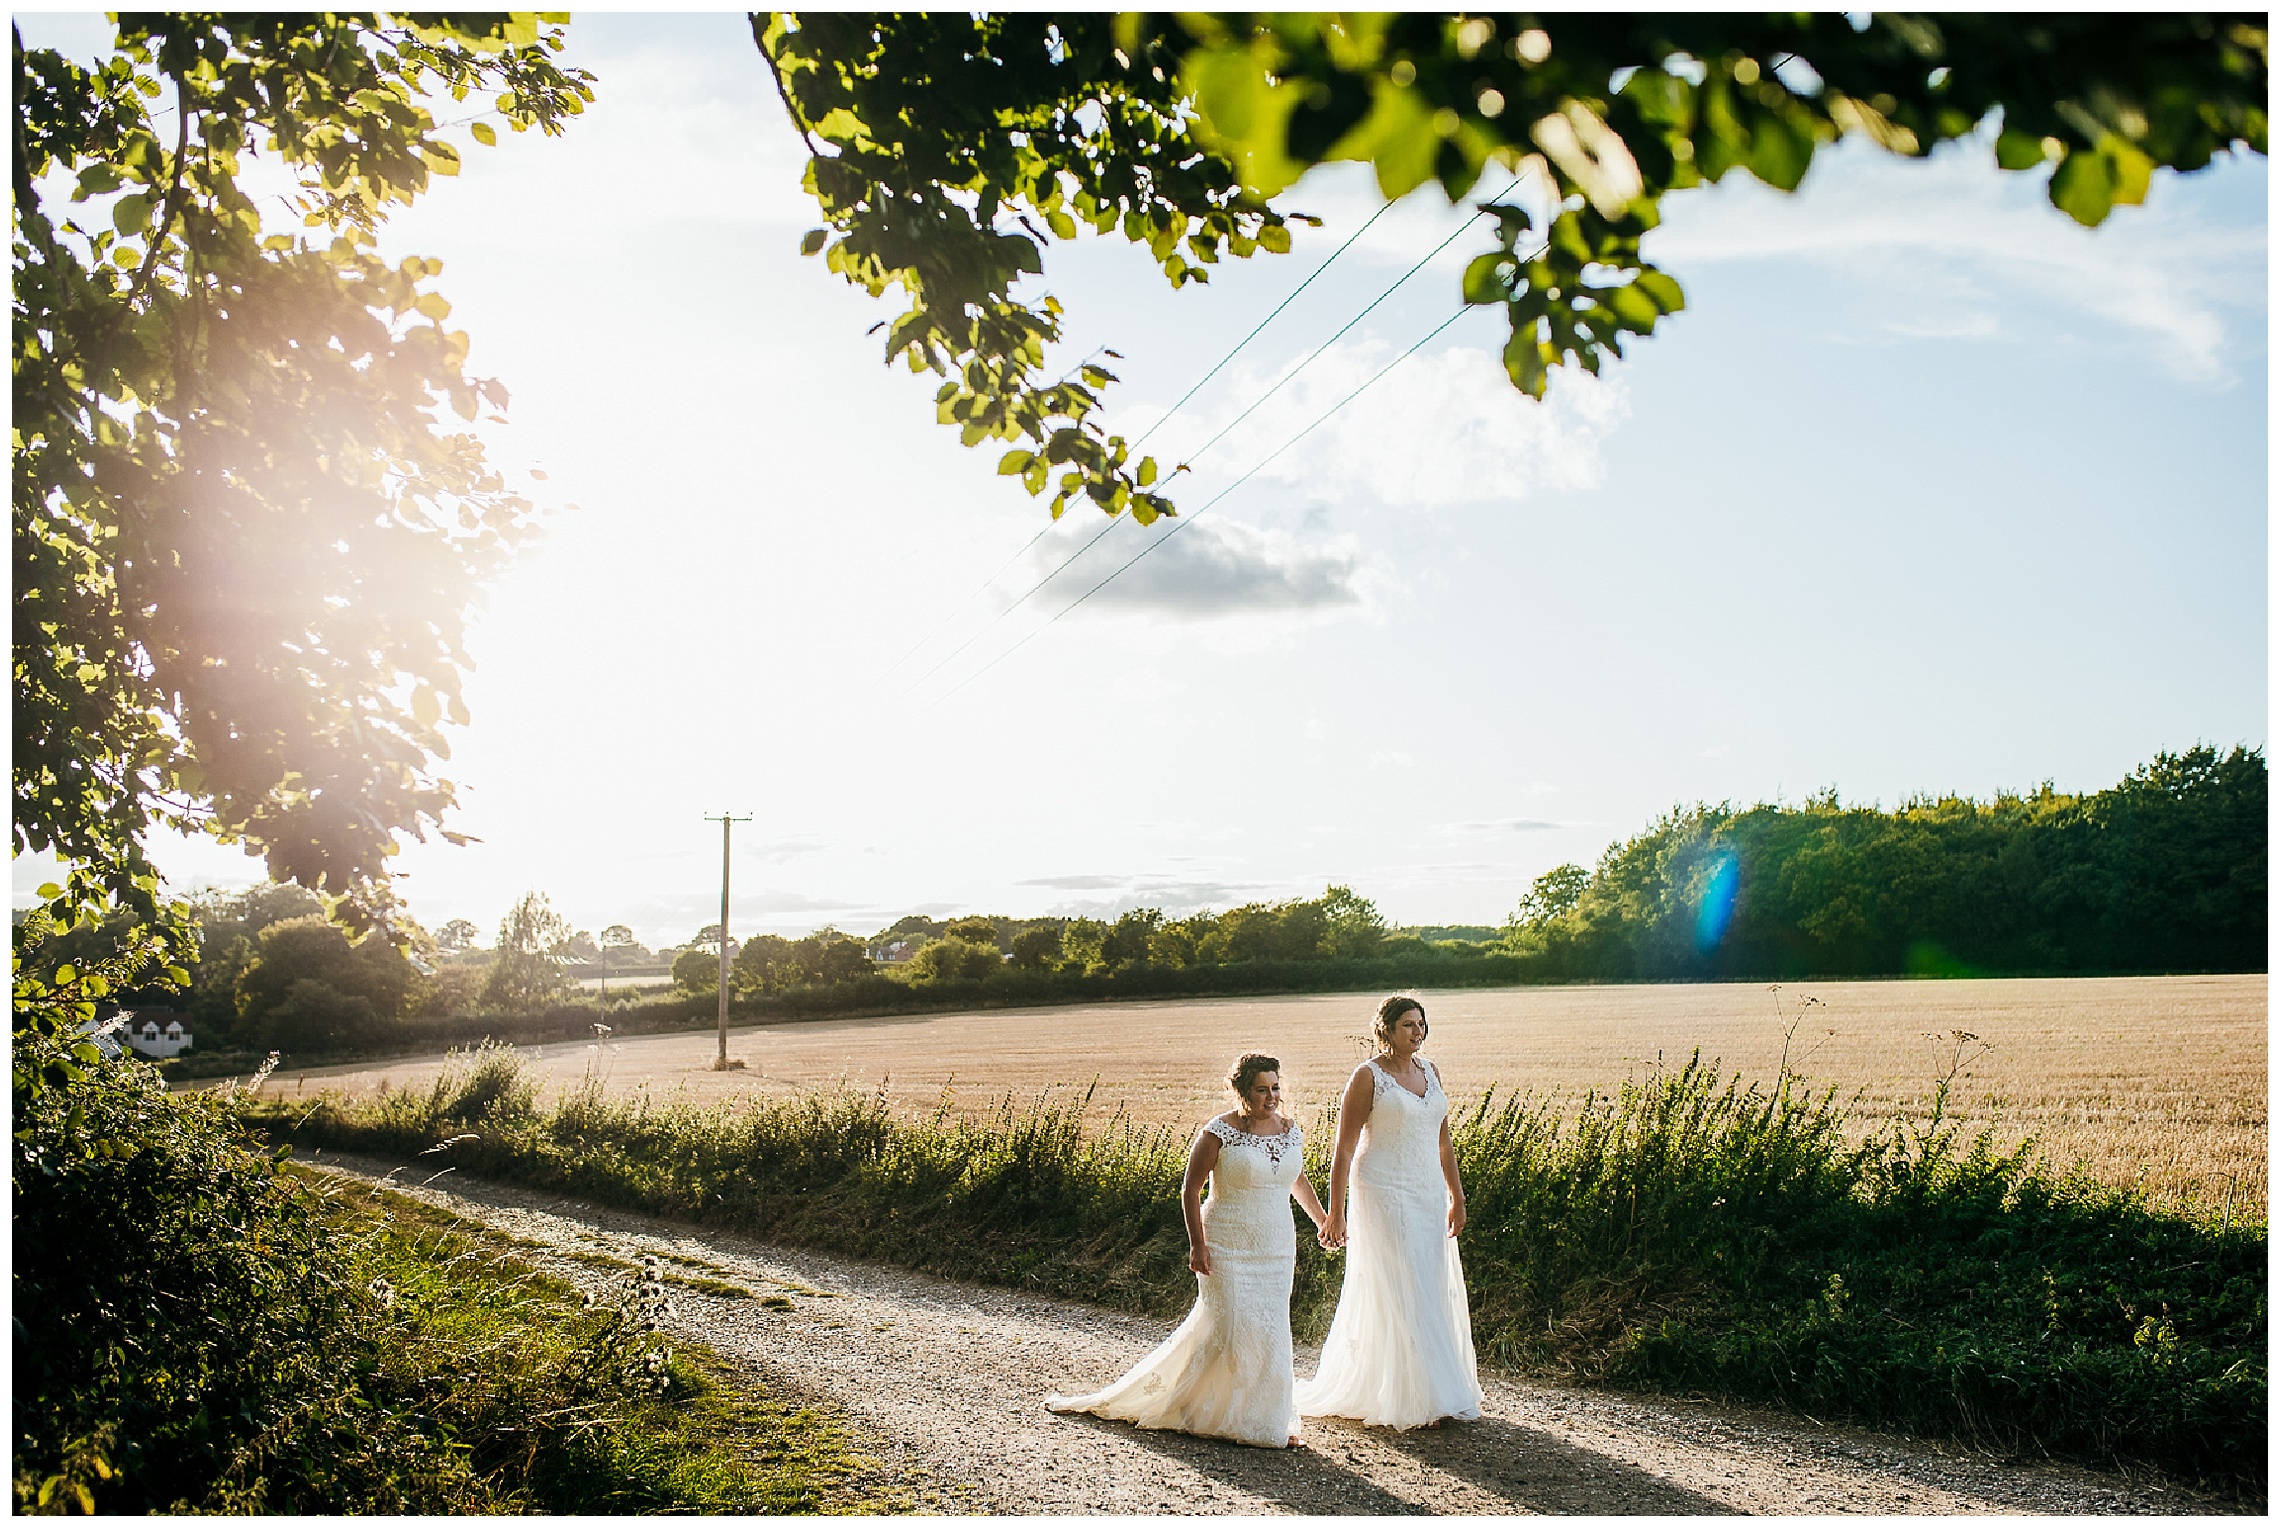 brides walk together at sunset